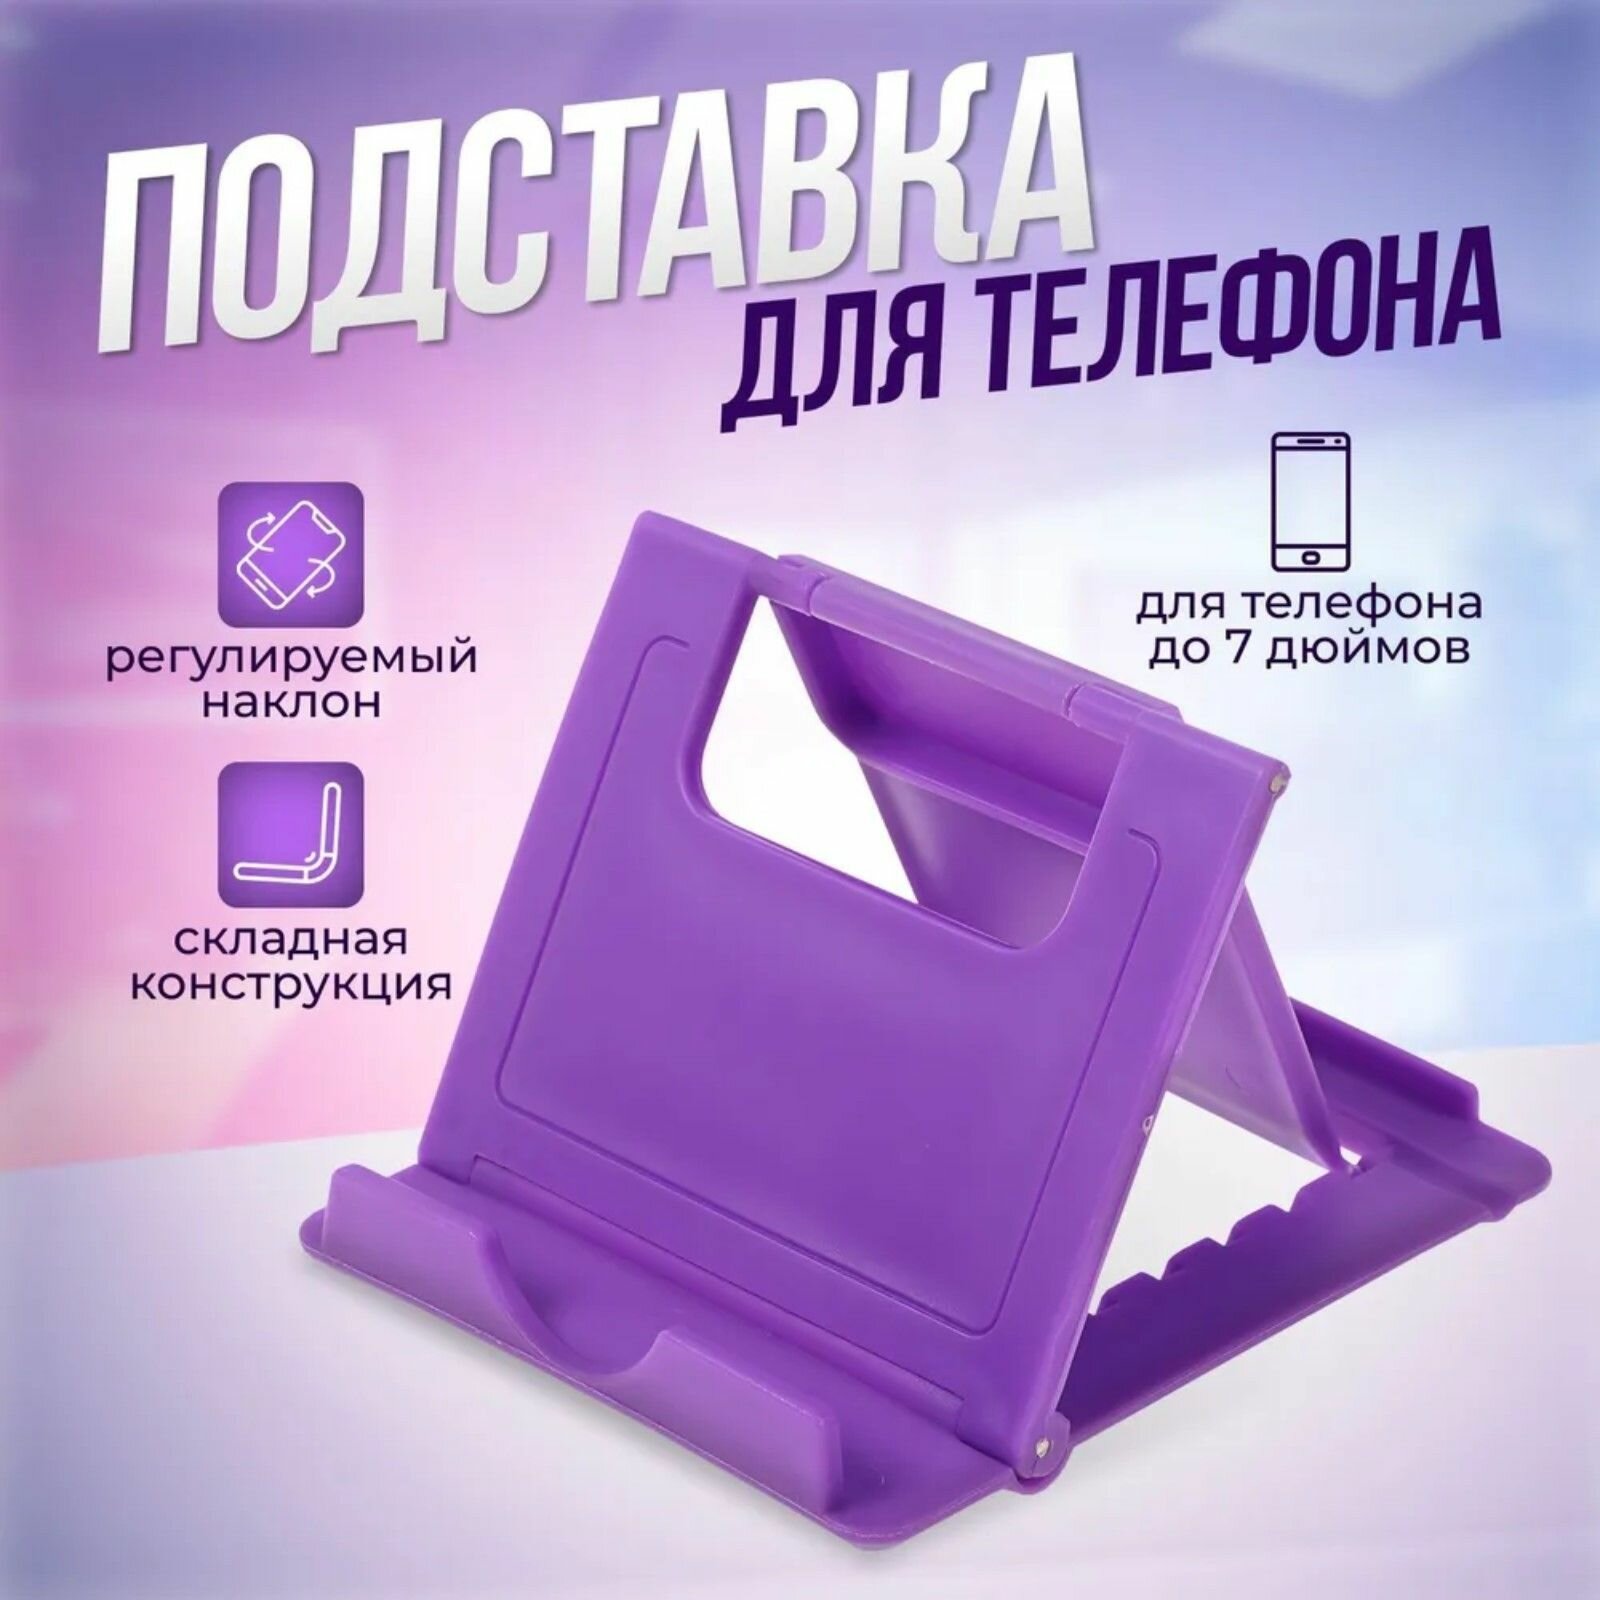 Подставка для телефона до 7 дюймов / Держатель телефона / Подставка для планшета складная регулируемая высота цвет фиолетовый